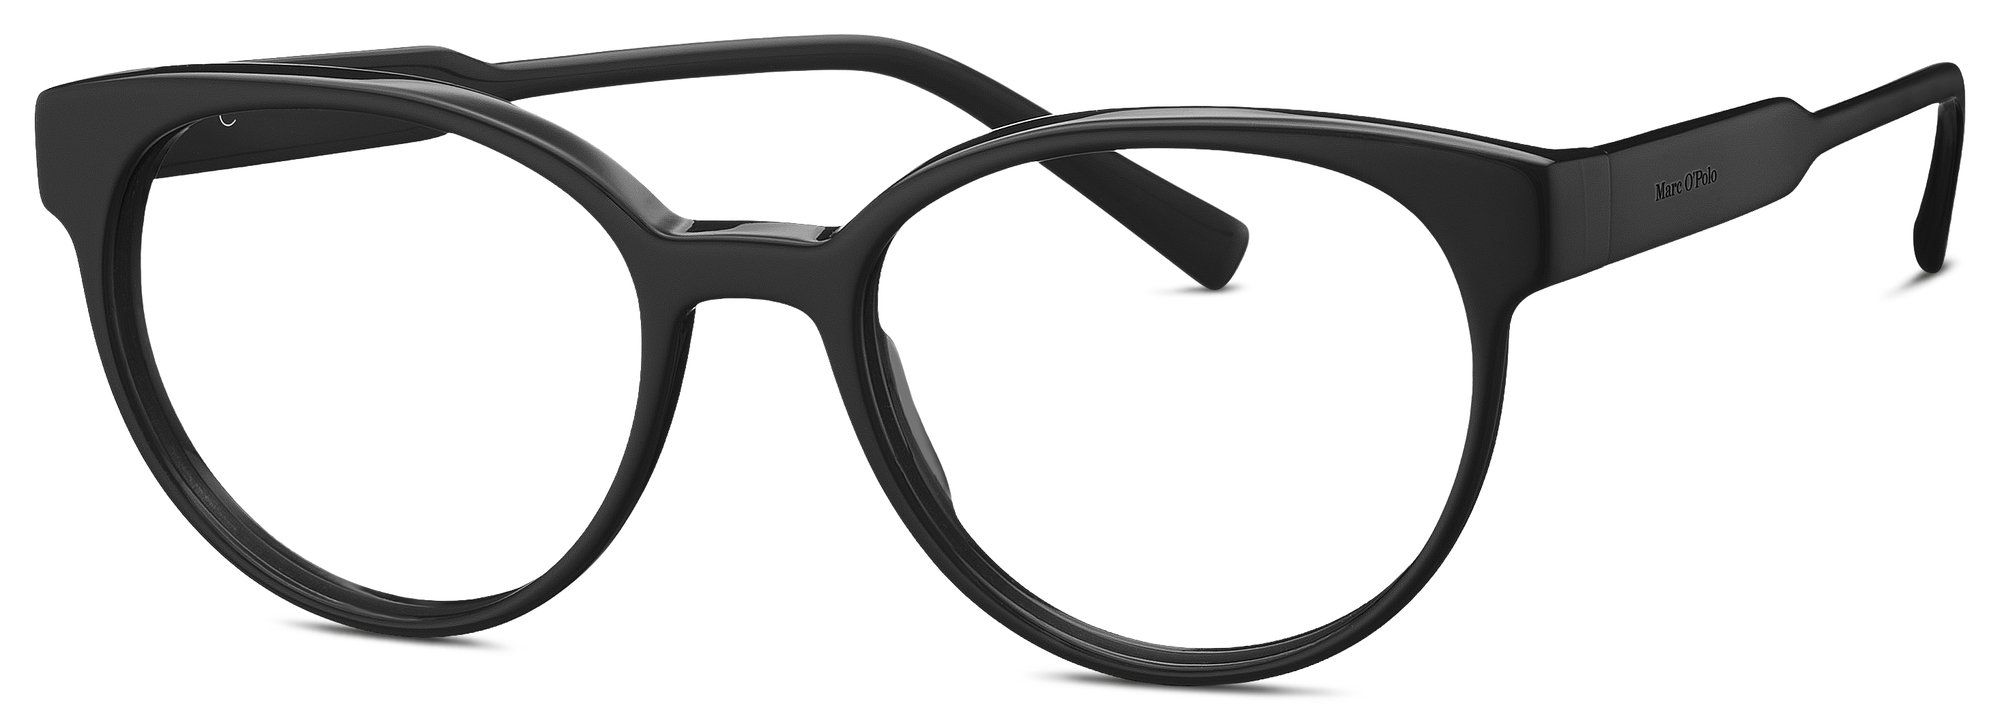 Das Bild zeigt die Korrektionsbrille 503209 10 von der Marke Marc O‘Polo in schwarz.